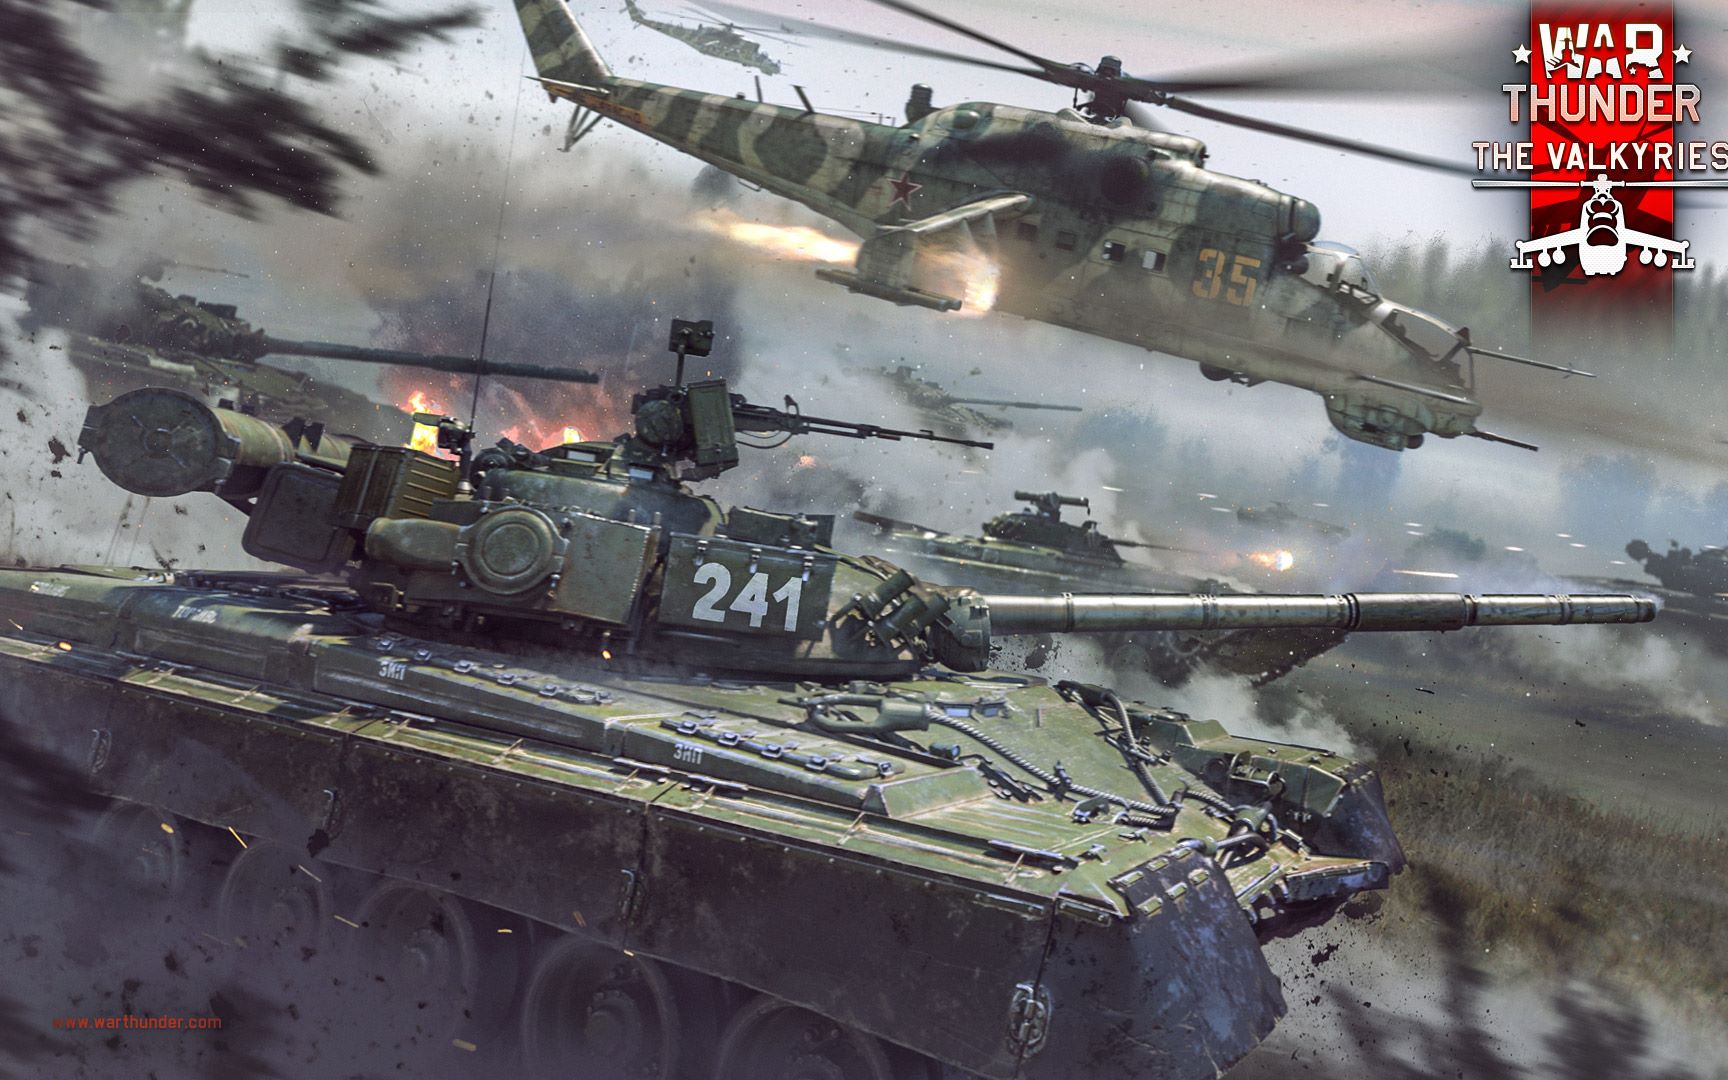 英国陆军挑战者坦克的机密情报被泄露于网络游戏《战争雷霆》